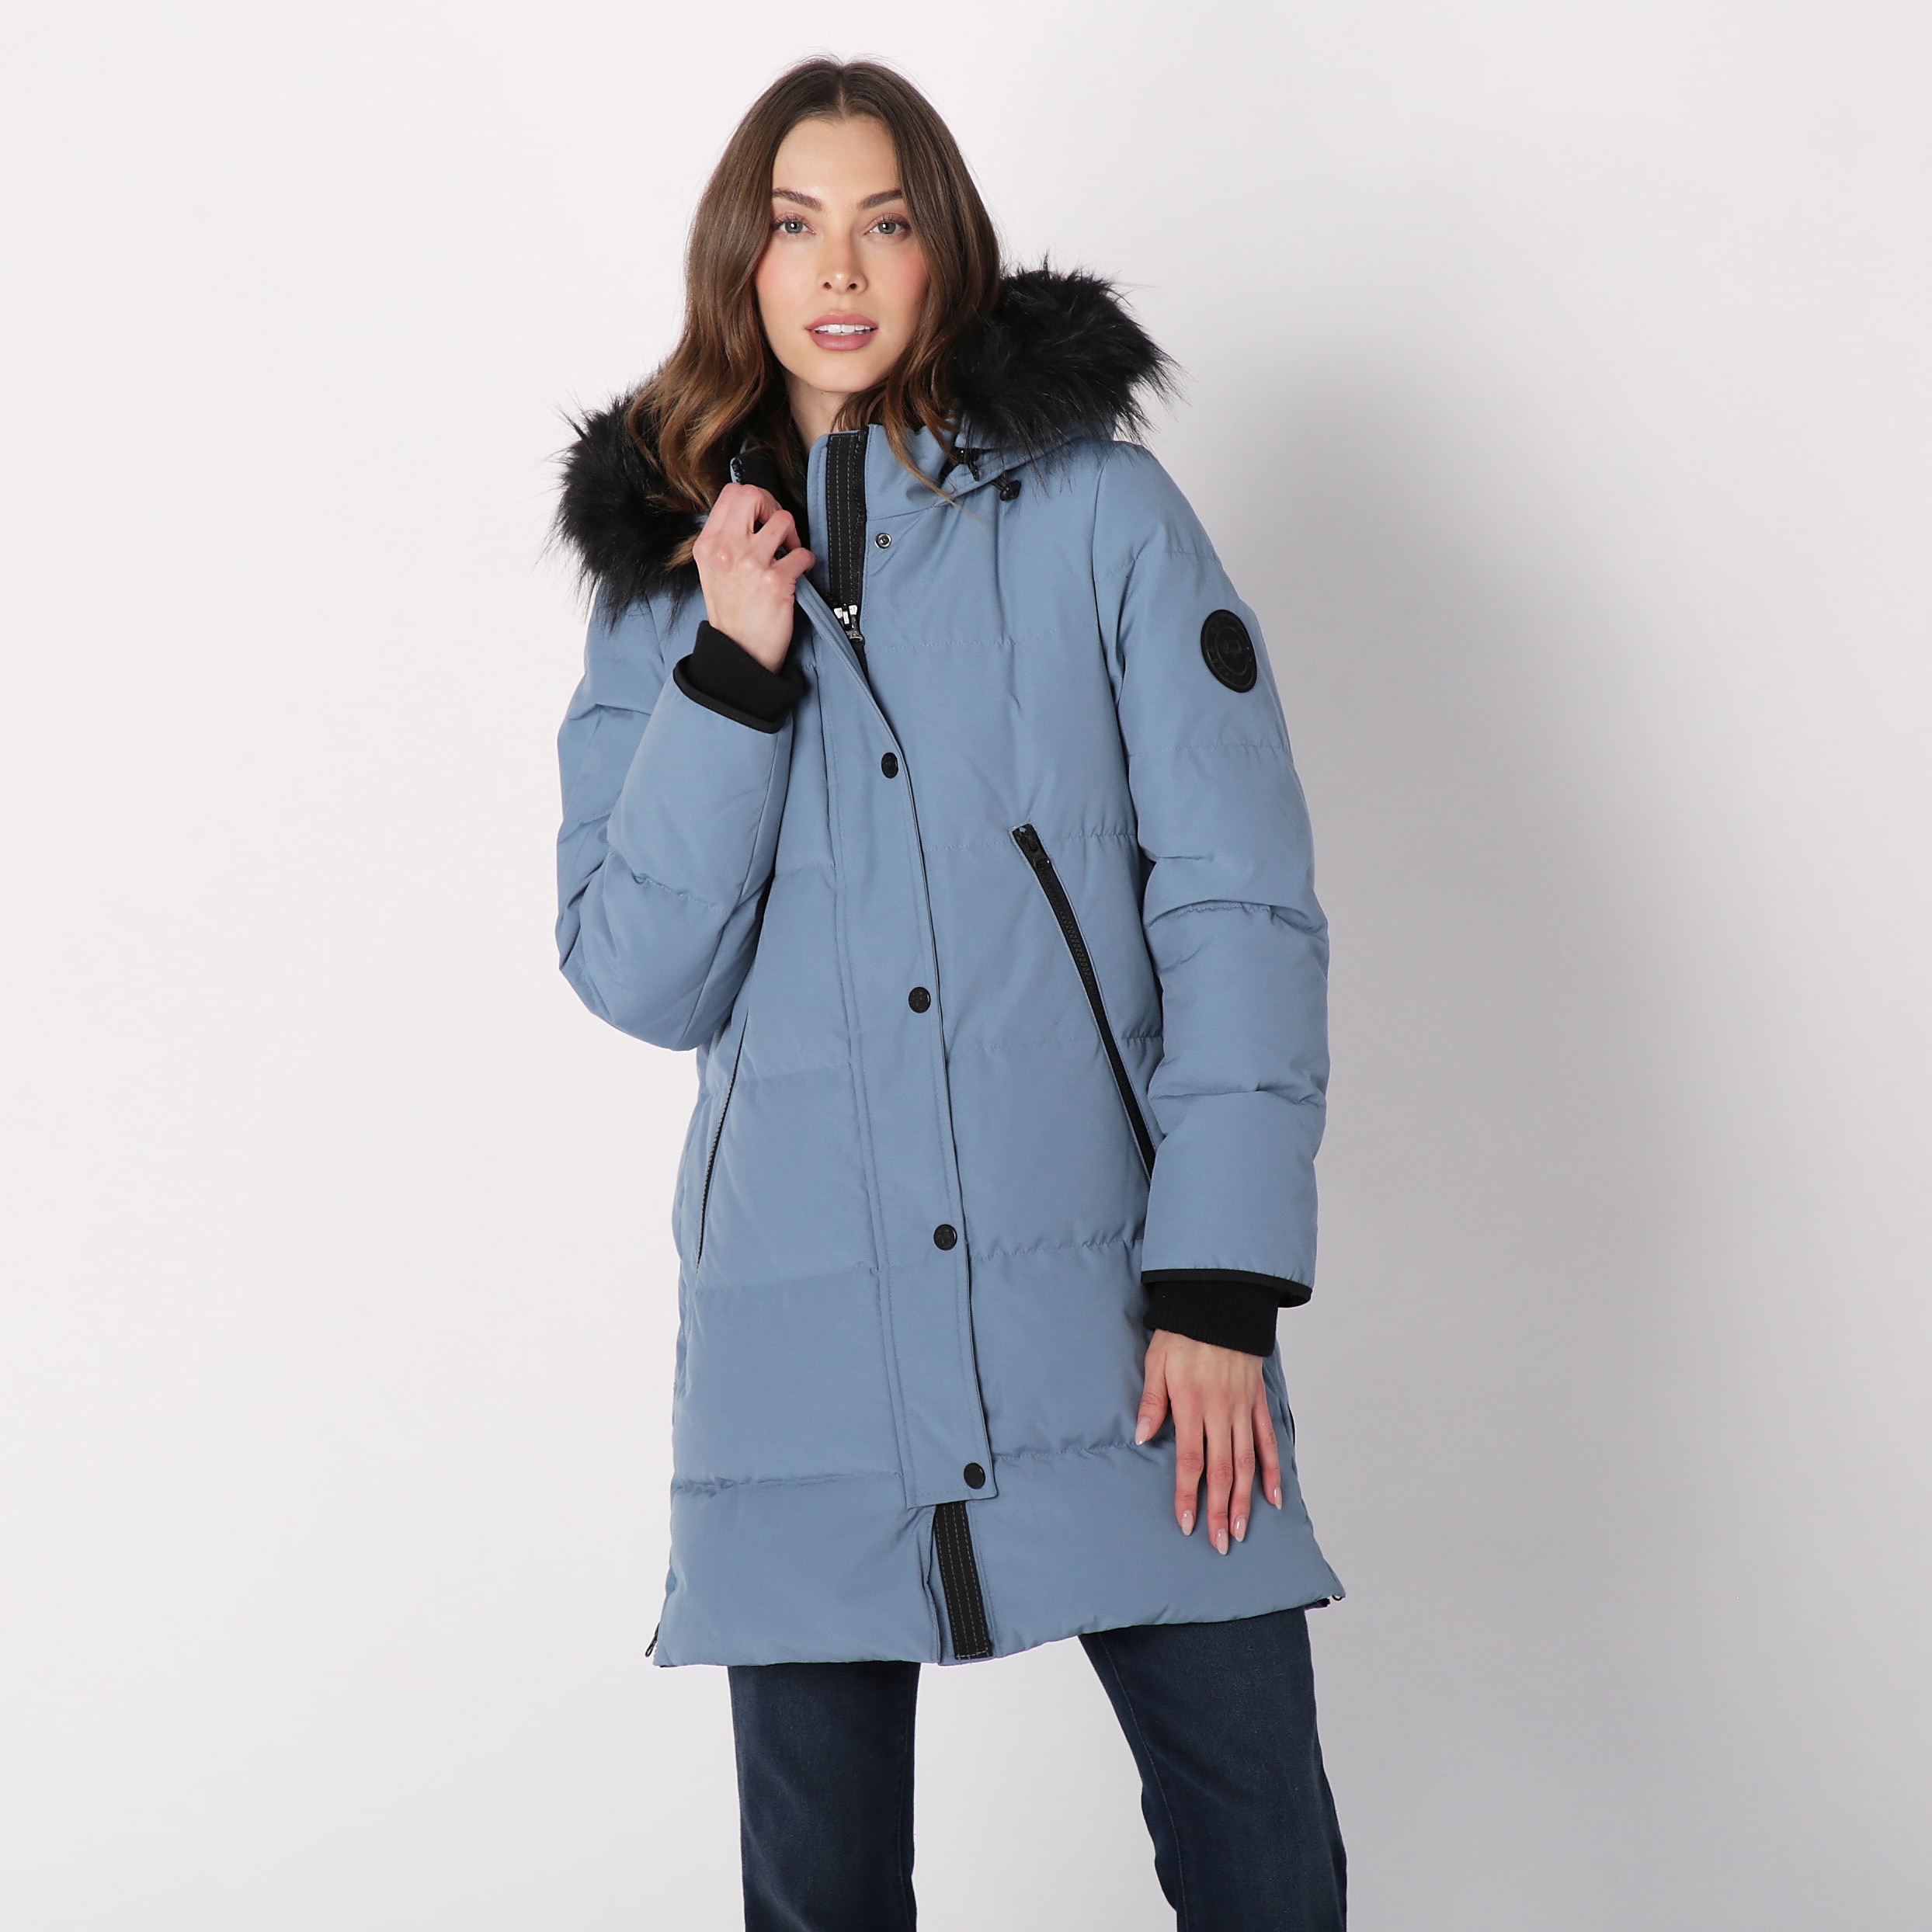 Clothing & Shoes - Jackets & Coats - Coats & Parkas - Arctic